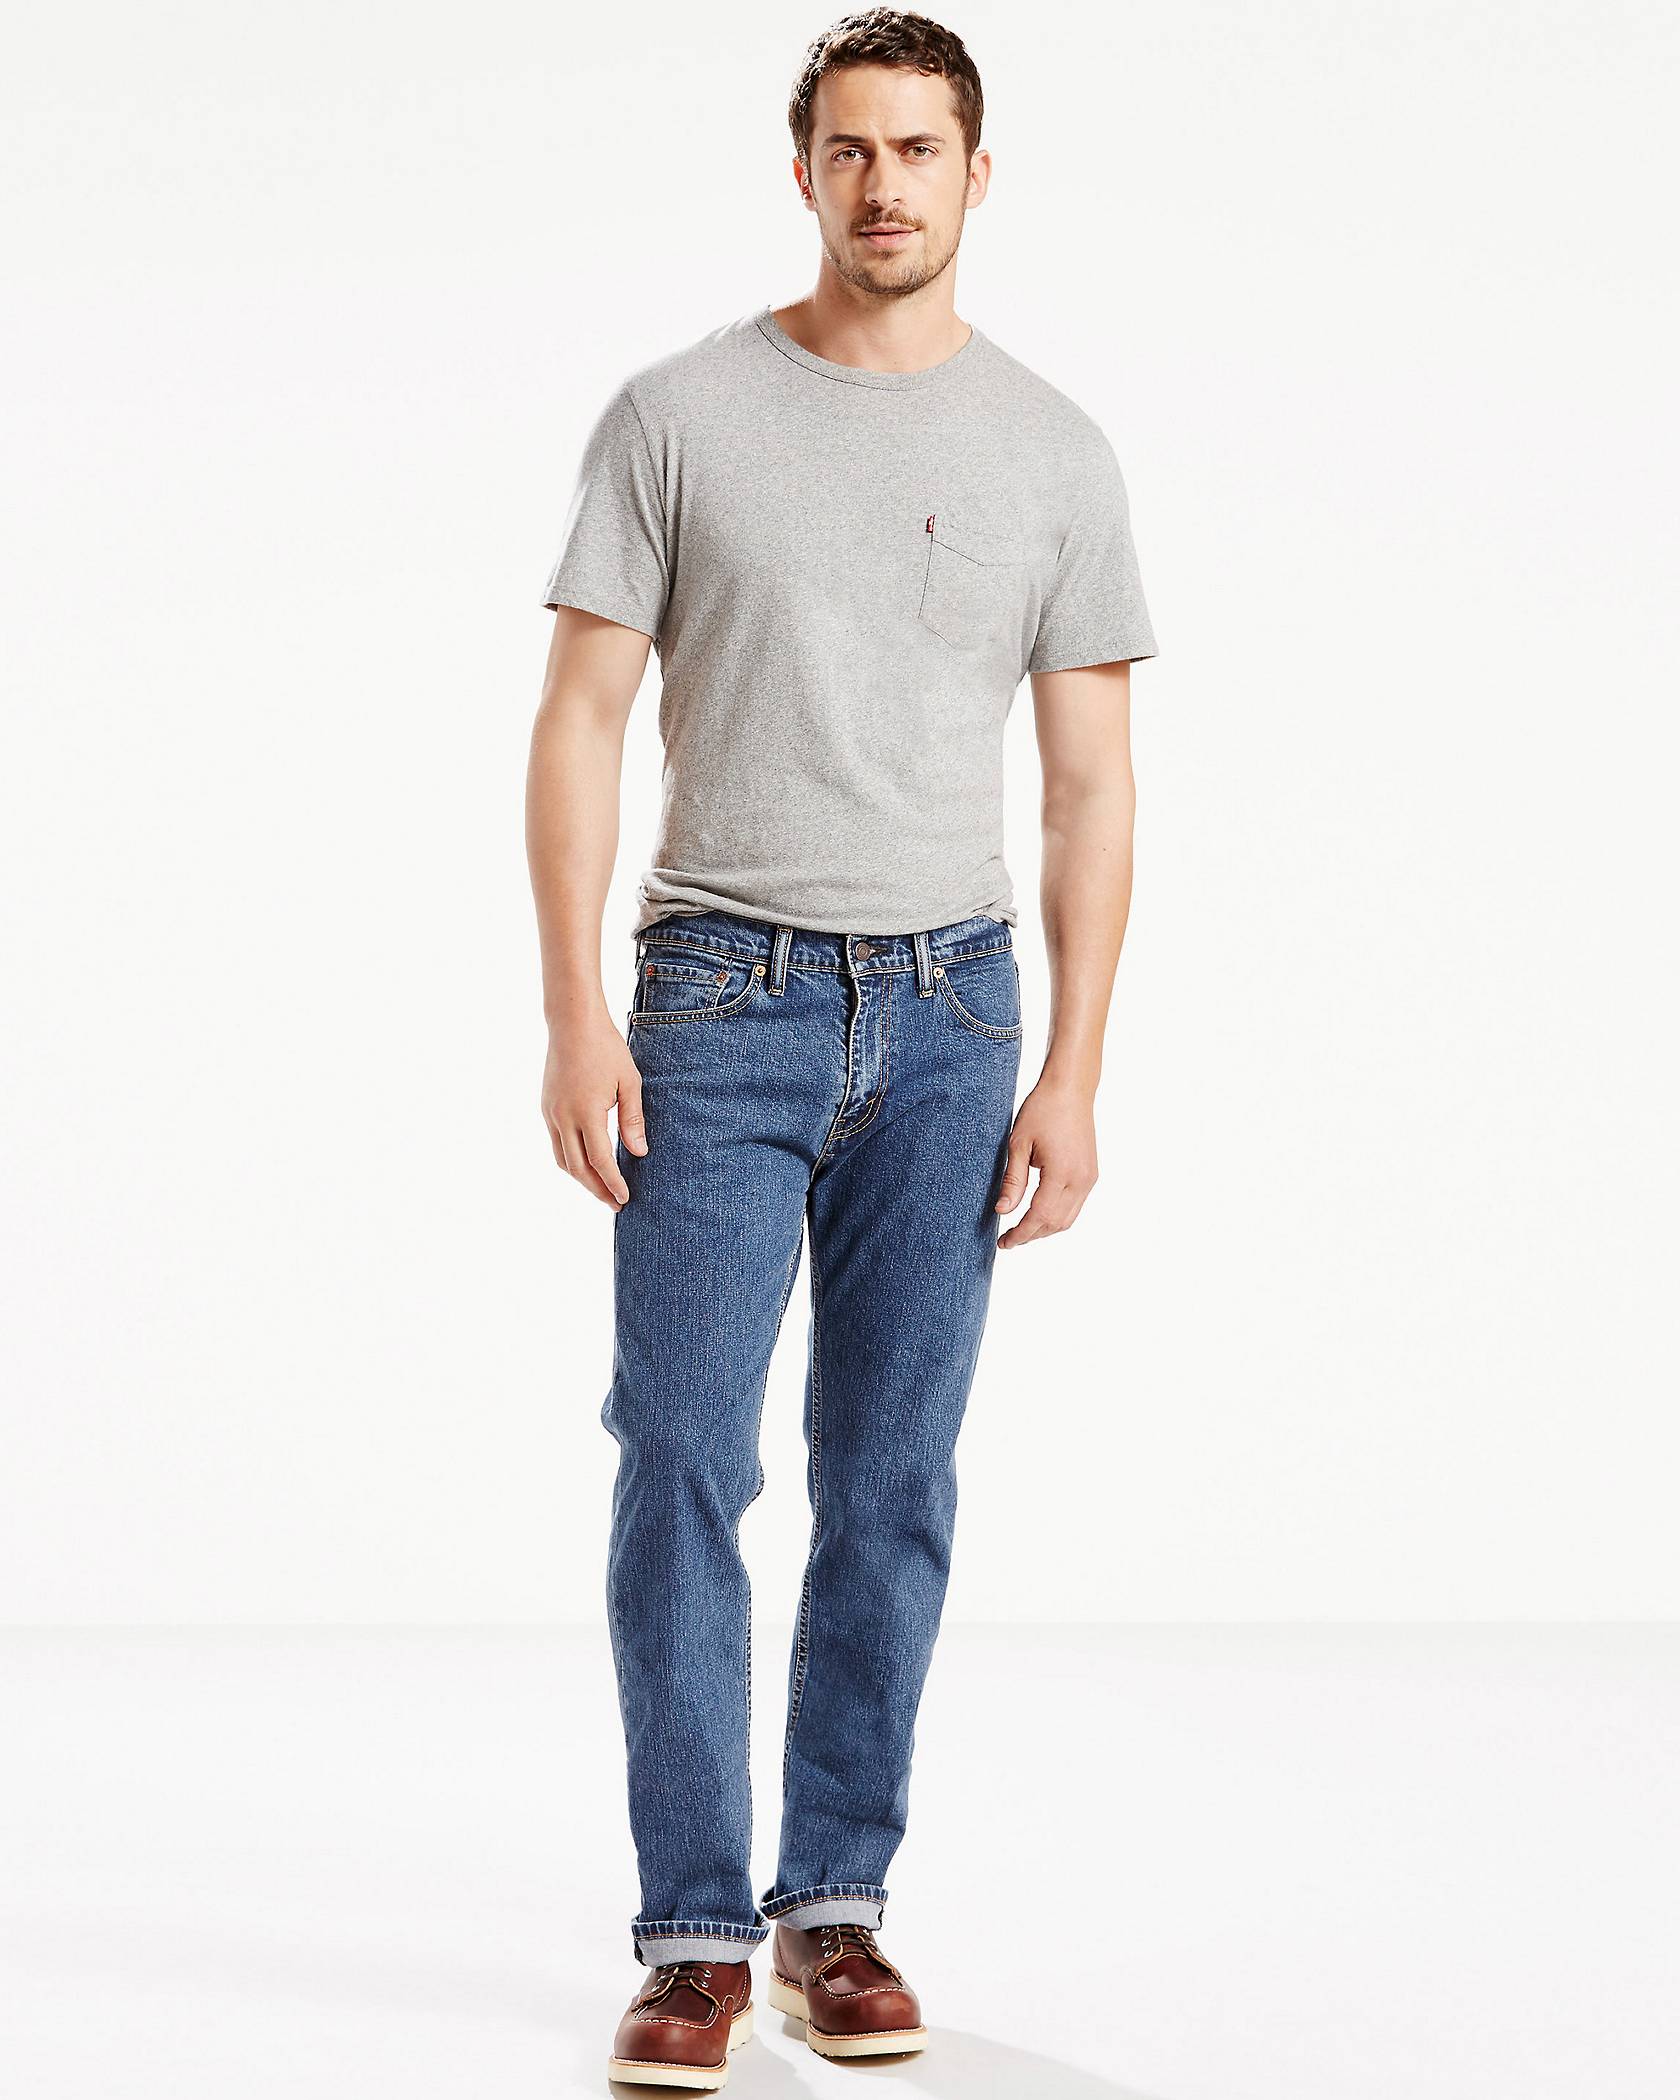 Levi's® Top 8 Best Jeans for Men